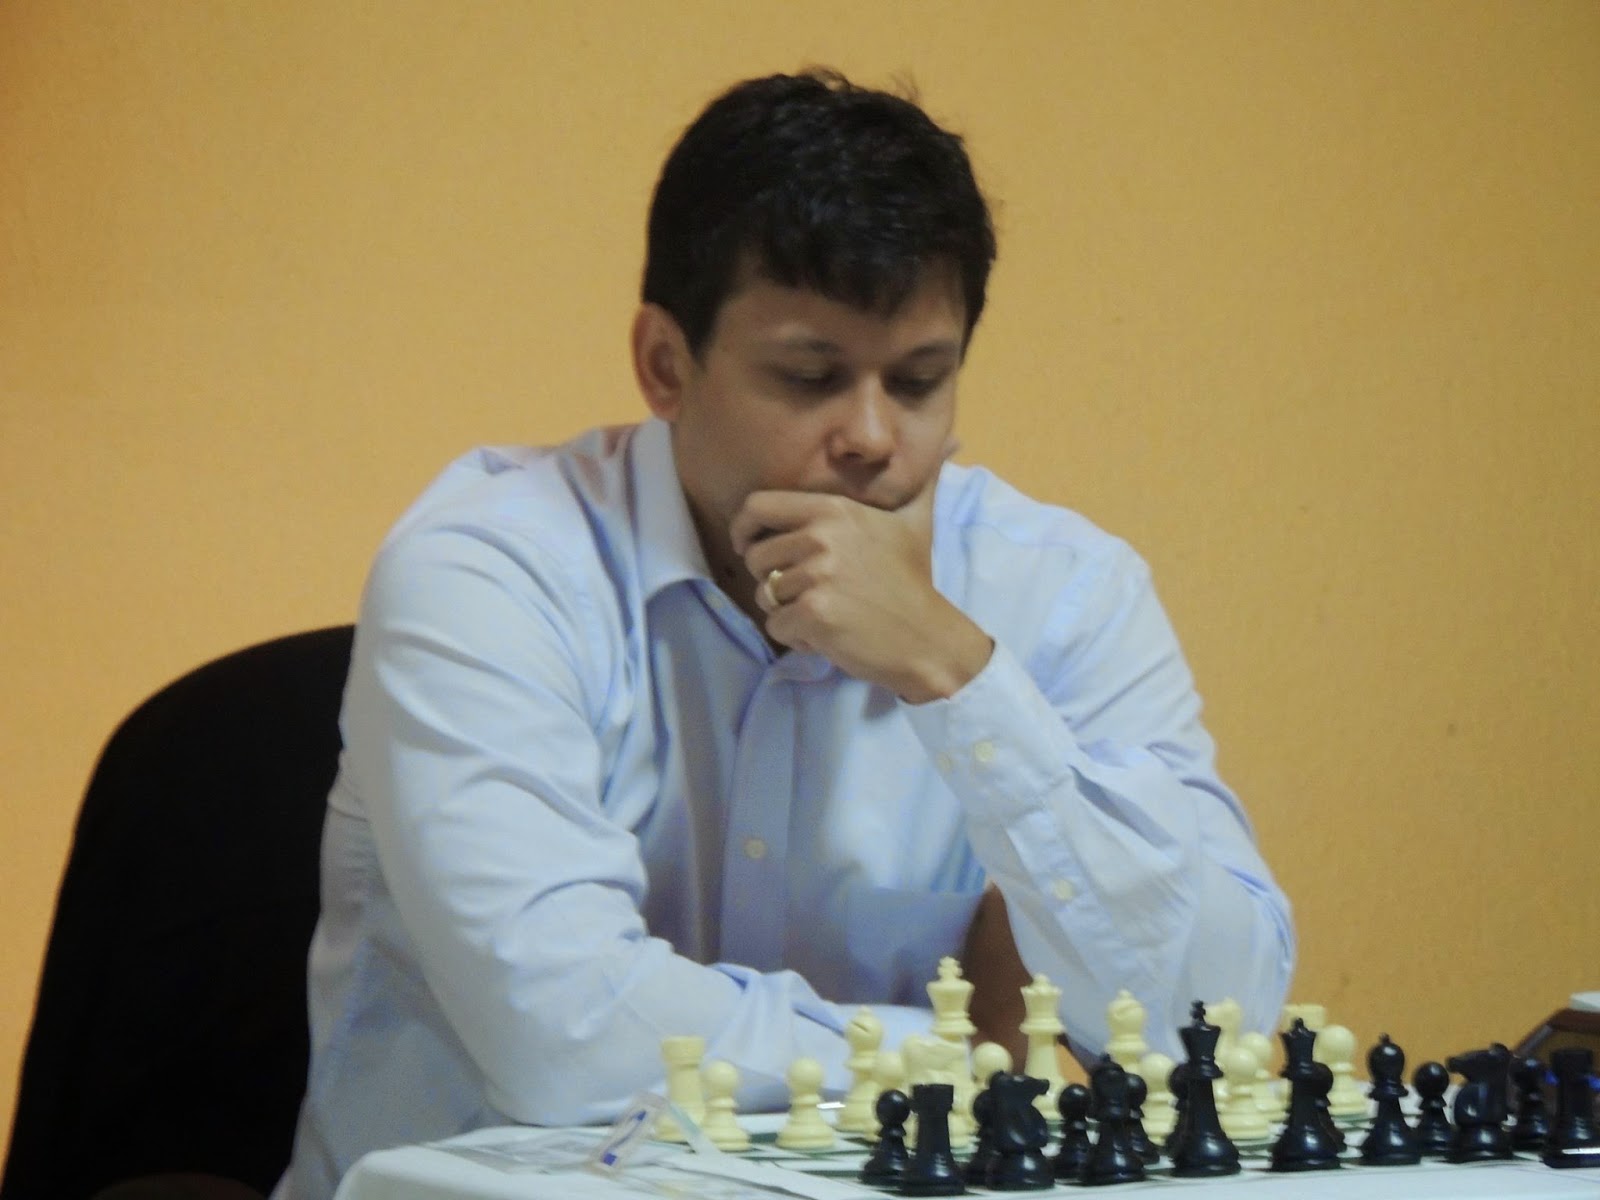 Rafael Leitão representa Maranhão na Olimpíada de xadrez, na Turquia